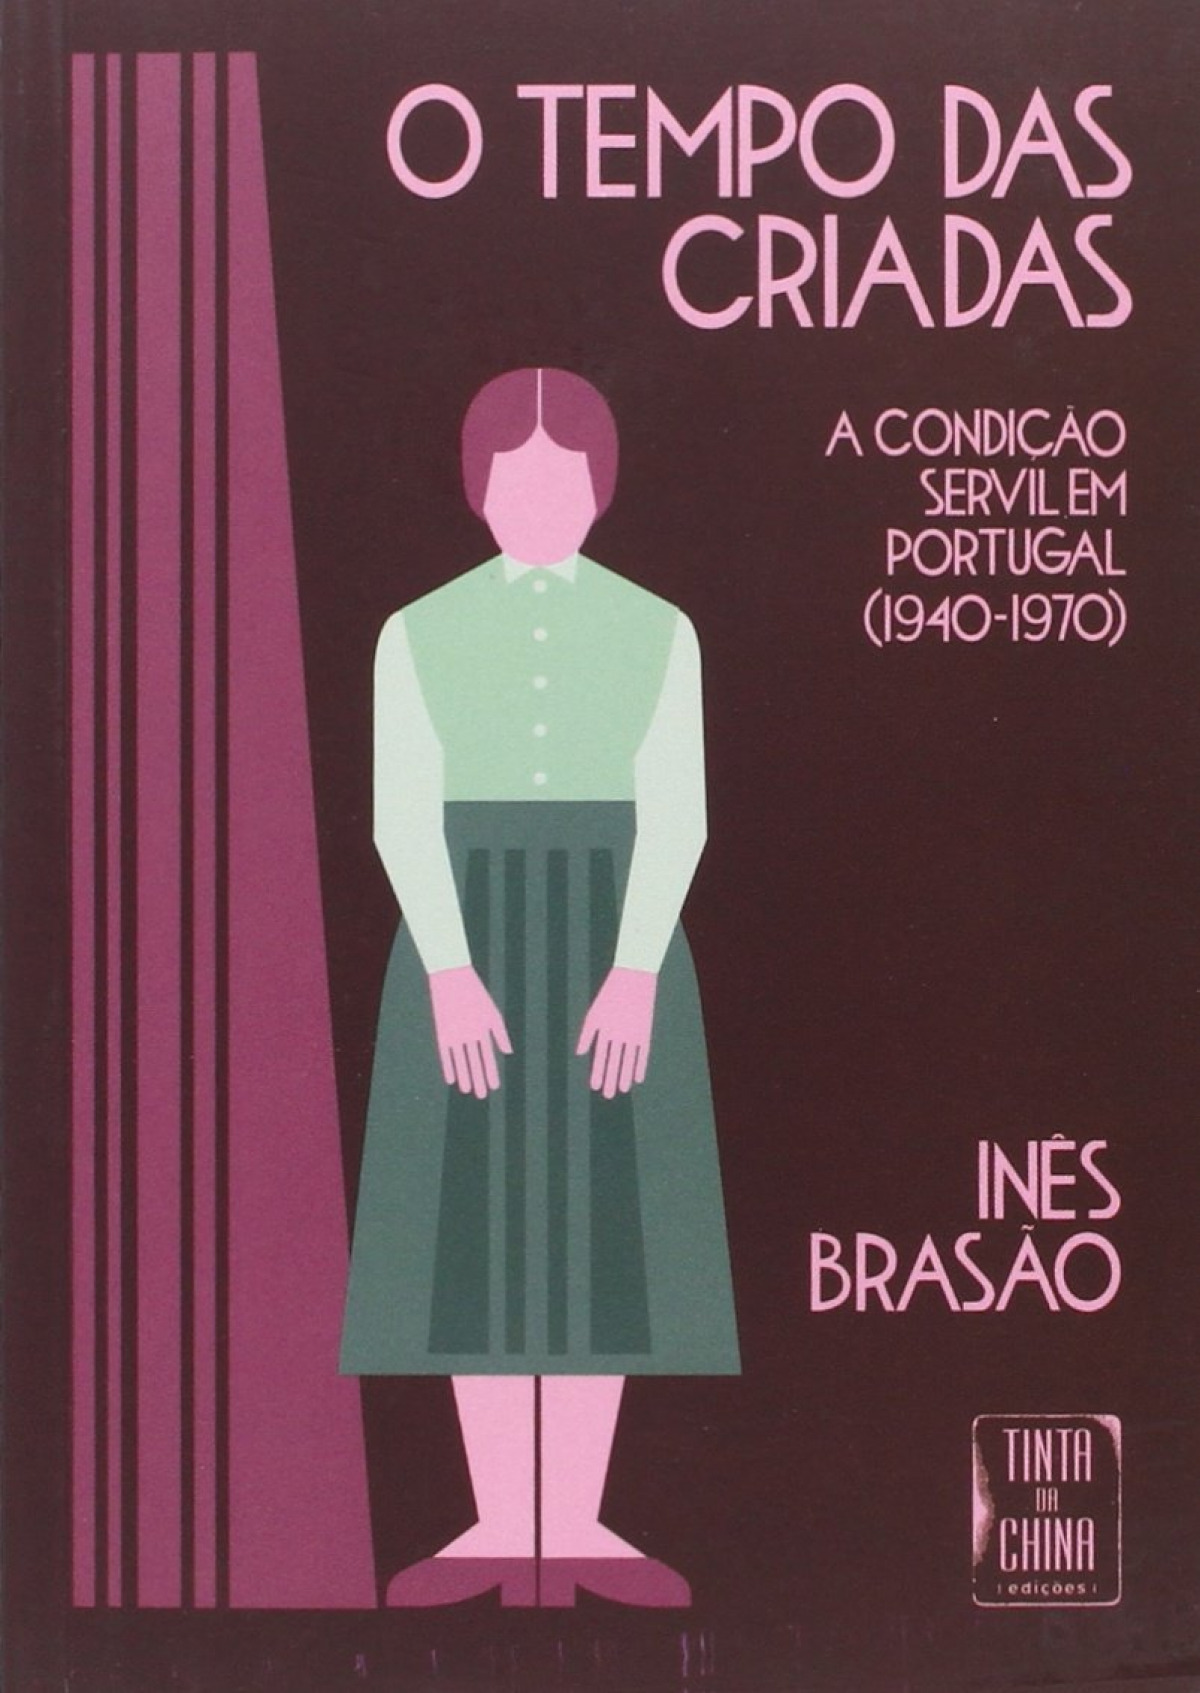 Tempo das Criadas - A Condição Servil em Portugal (1940-1970) (O) - Brasão, Inês